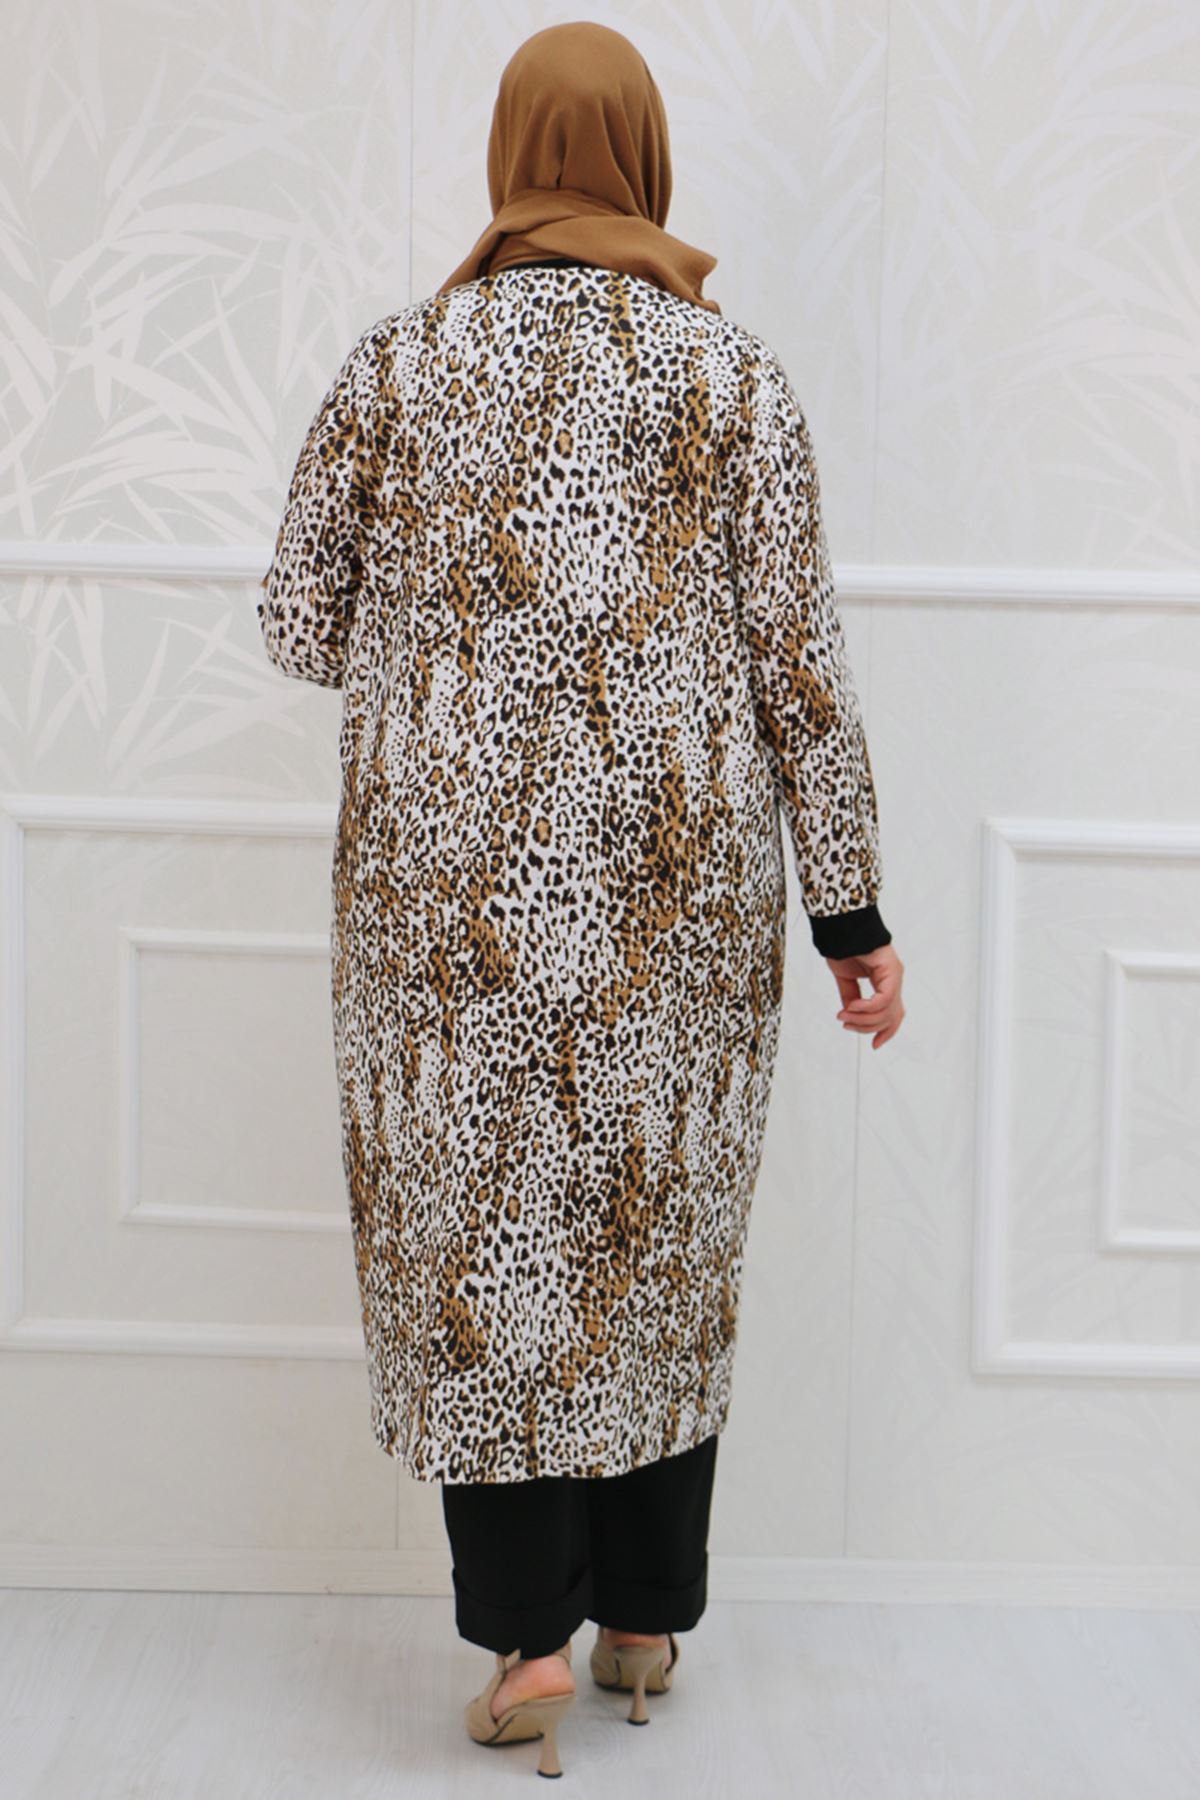 37101 Large Size Crepe Tunic Jacket Suit-Leopard